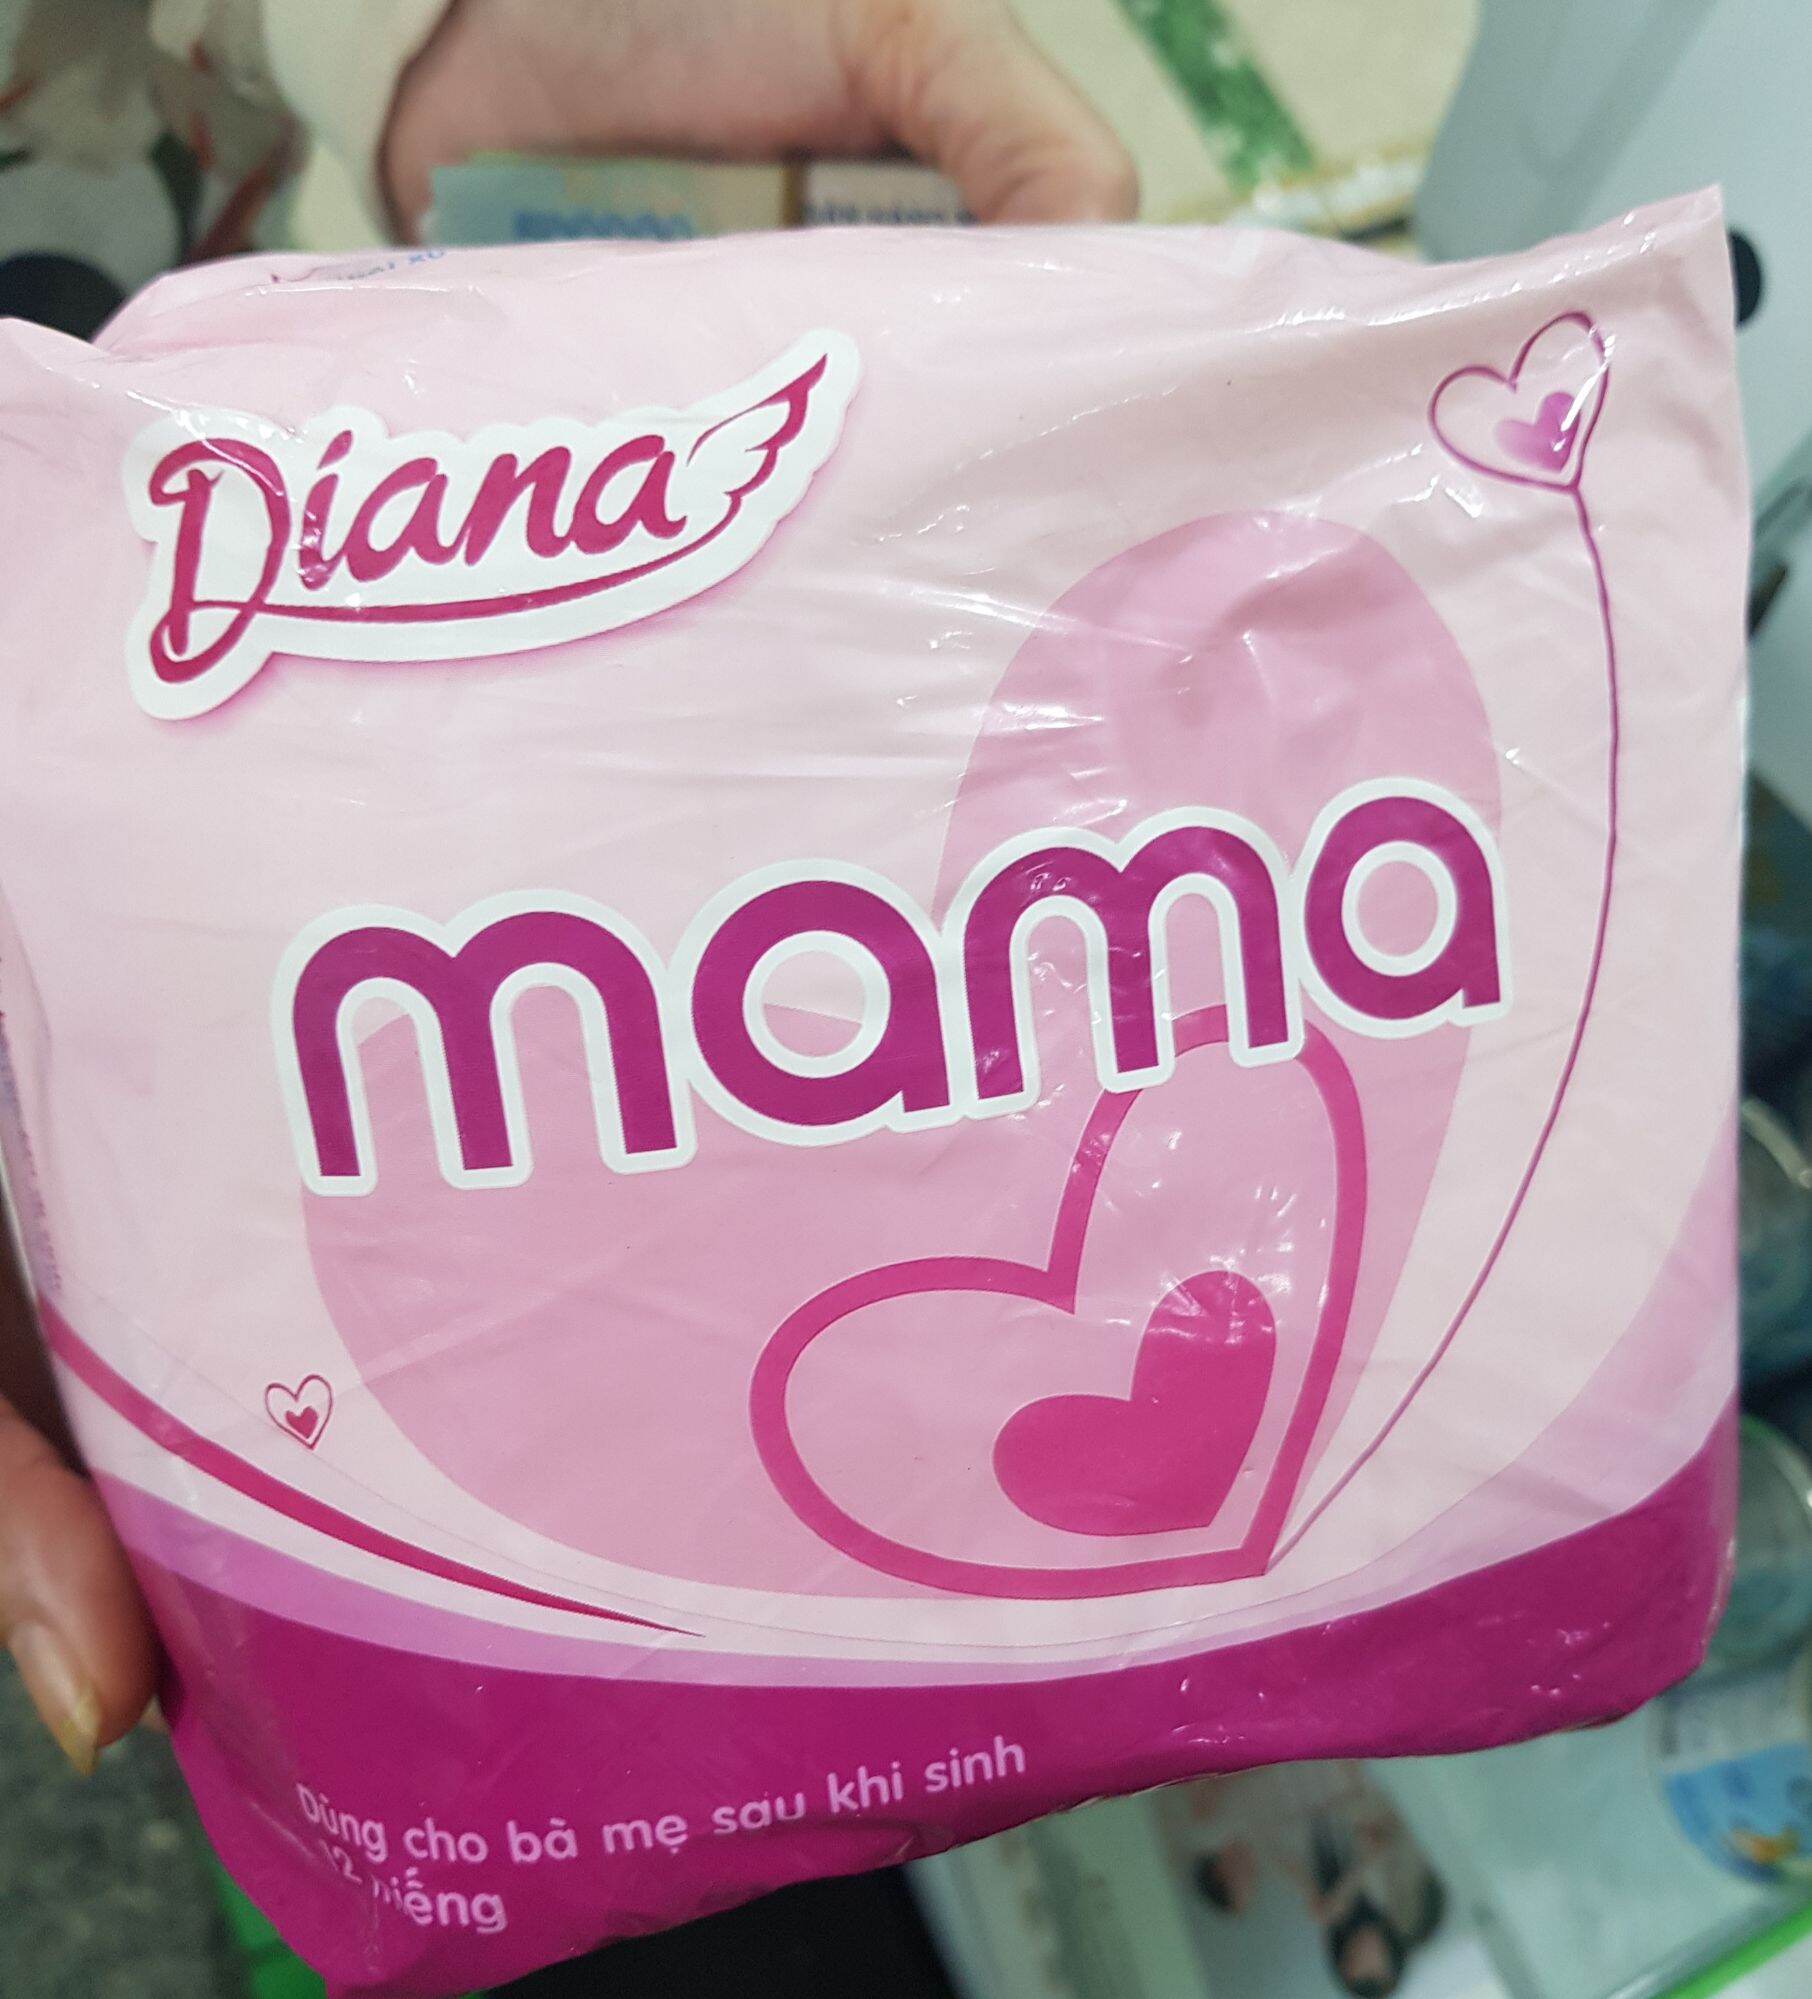 Băng vệ sinh Diana mâm thiết kế cho mẹ sau sinh